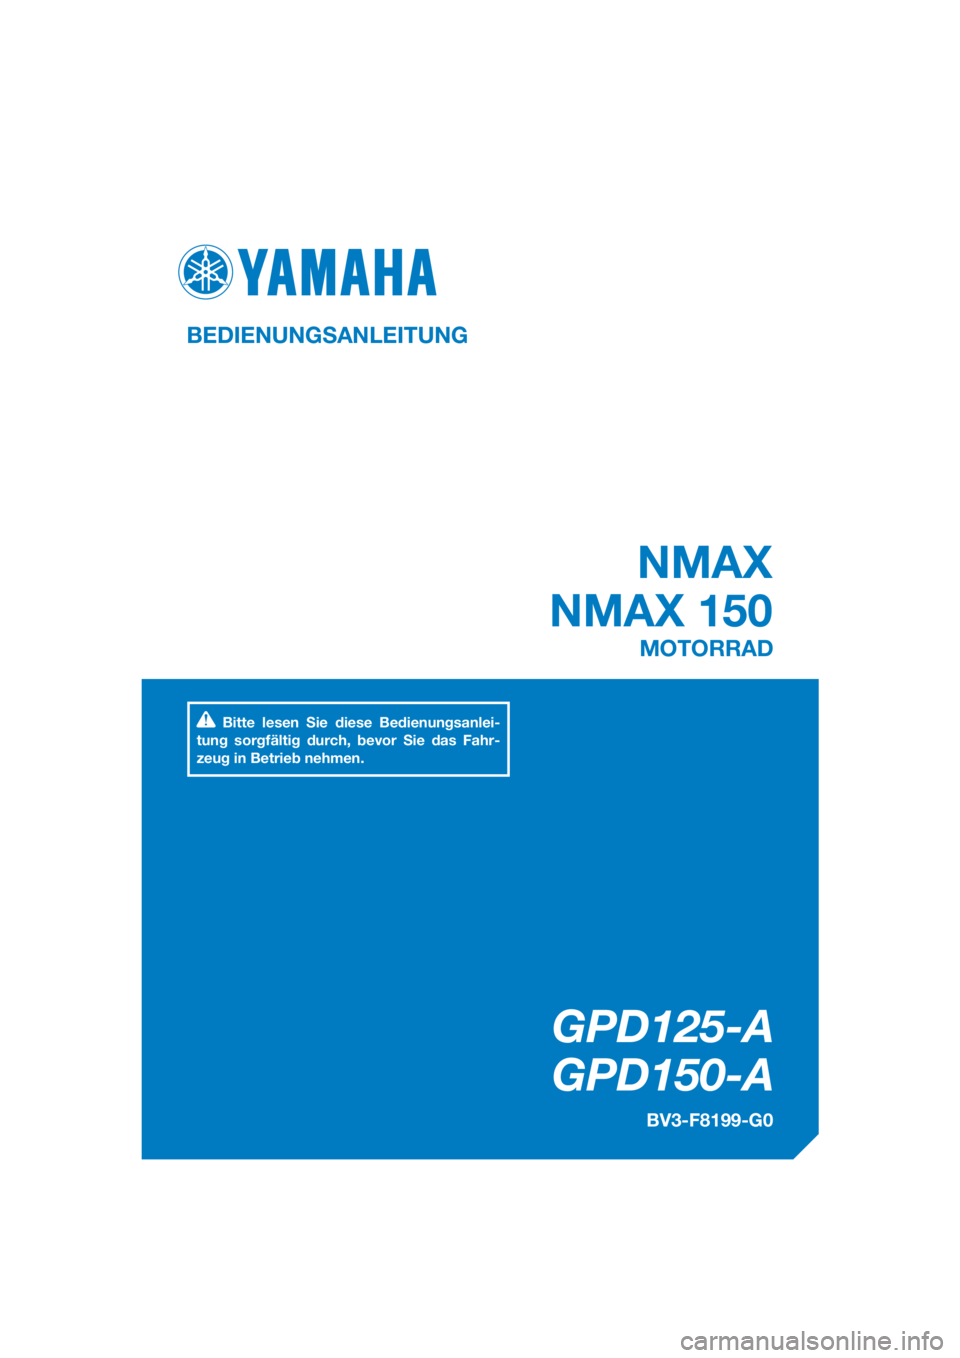 YAMAHA NMAX 150 2016  Betriebsanleitungen (in German) DIC183
GPD125-A
GPD150-A
NMAX
NMAX 150
BEDIENUNGSANLEITUNG
BV3-F8199-G0
MOTORRAD
Bitte lesen Sie diese Bedienungsanlei-
tung sorgfältig durch, bevor Sie das Fahr-
zeug in Betrieb nehmen.
[German  (G)